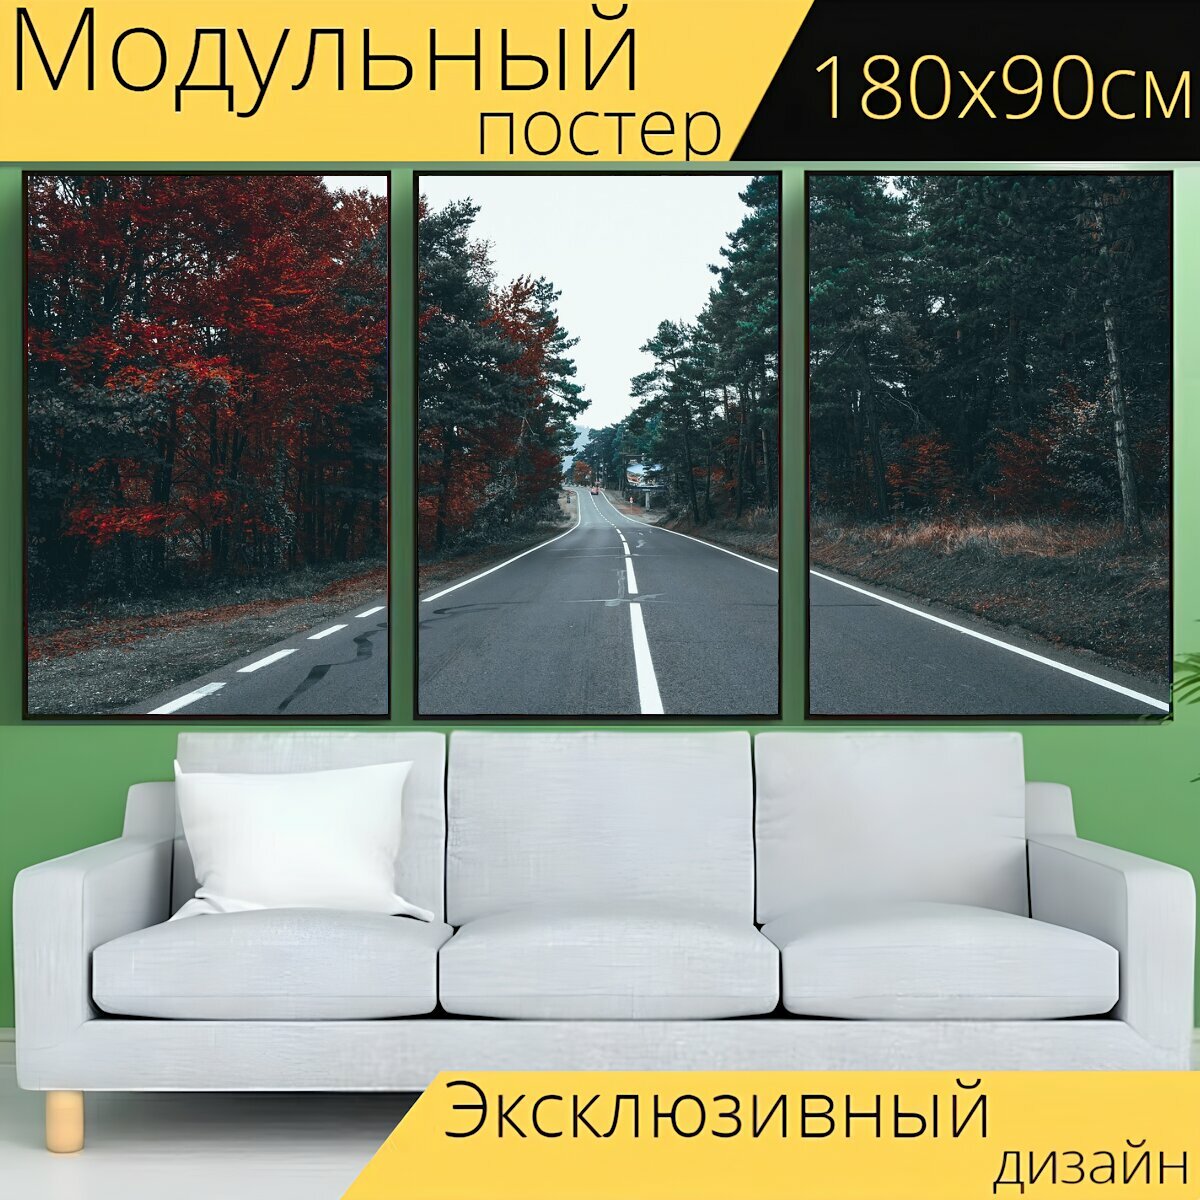 Модульный постер "Дорога, шоссе, асфальт" 180 x 90 см. для интерьера